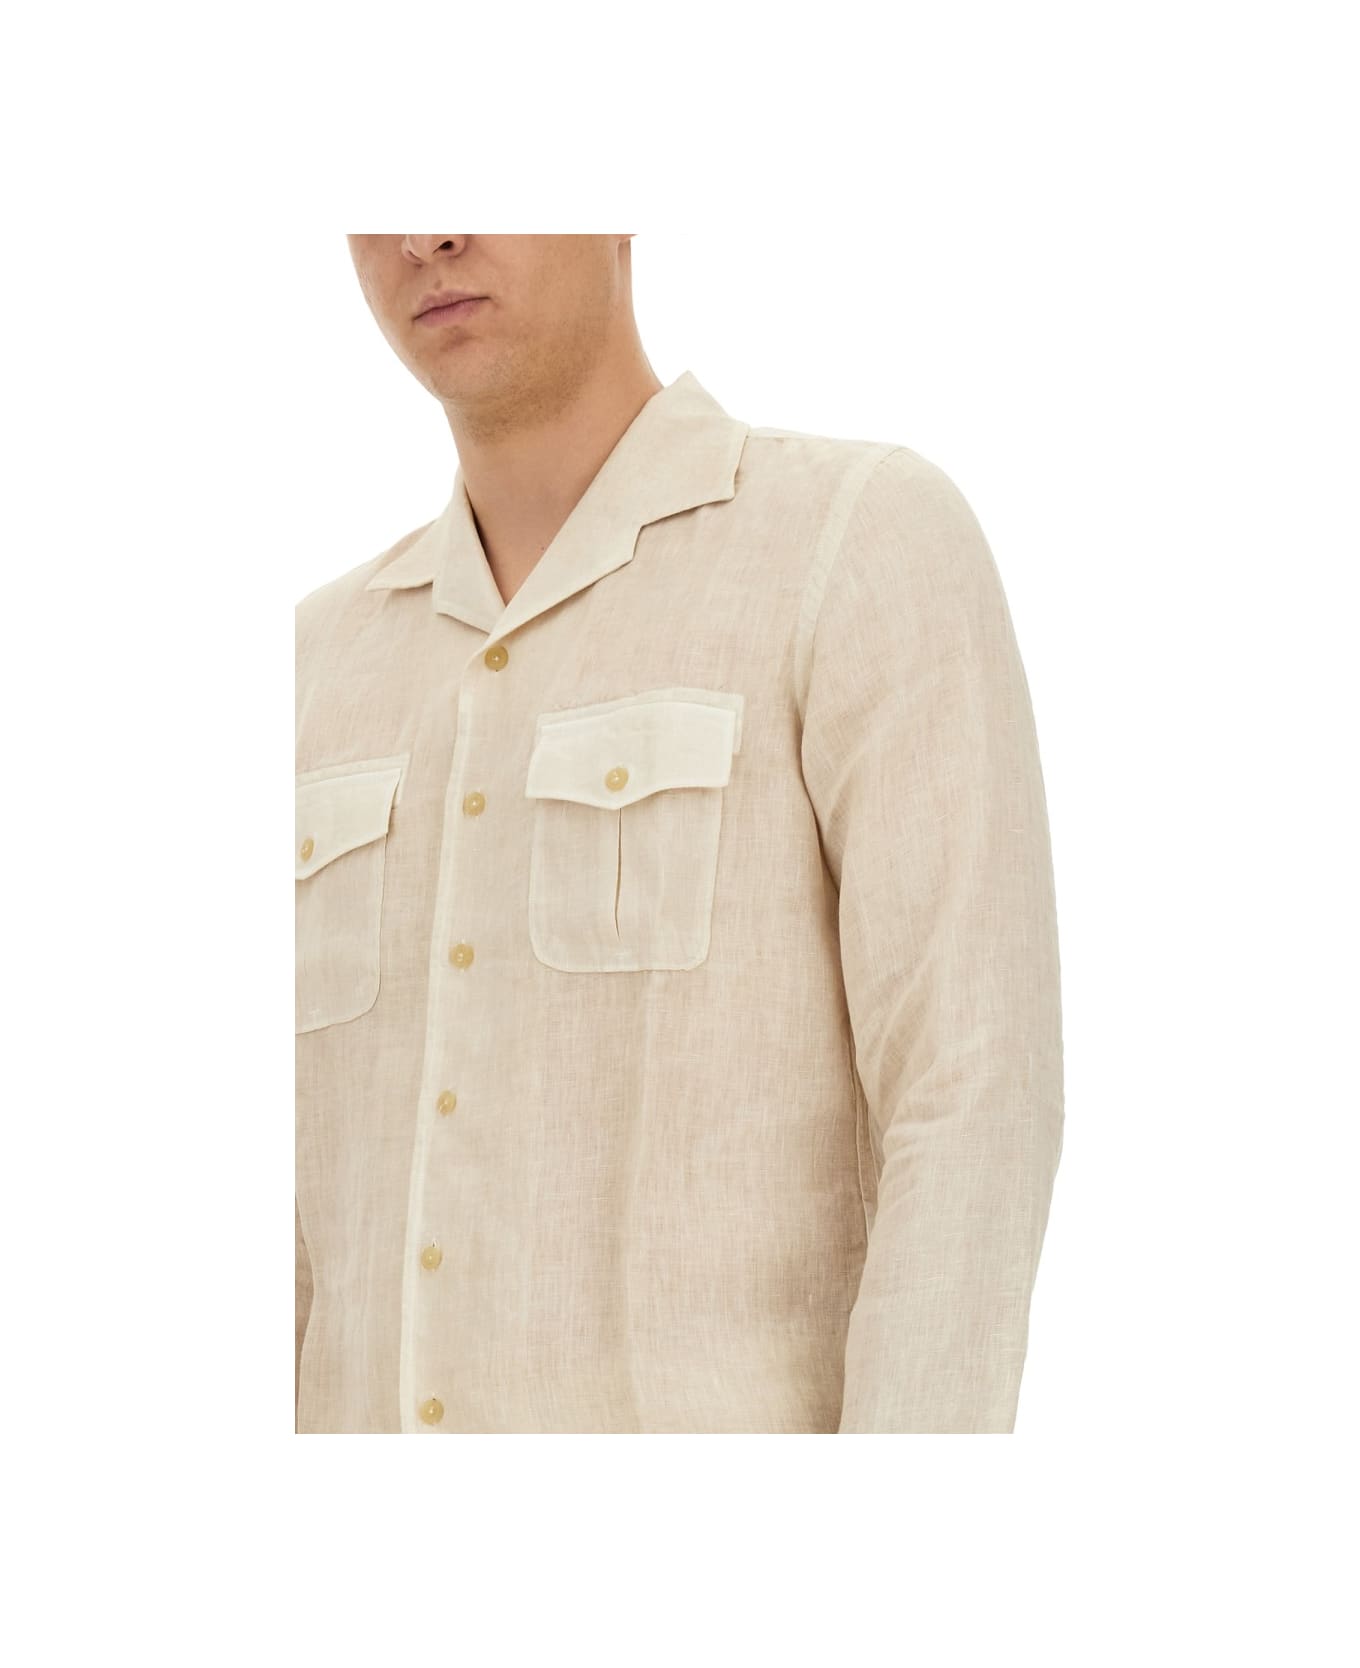 120% Lino Linen Shirt - BEIGE